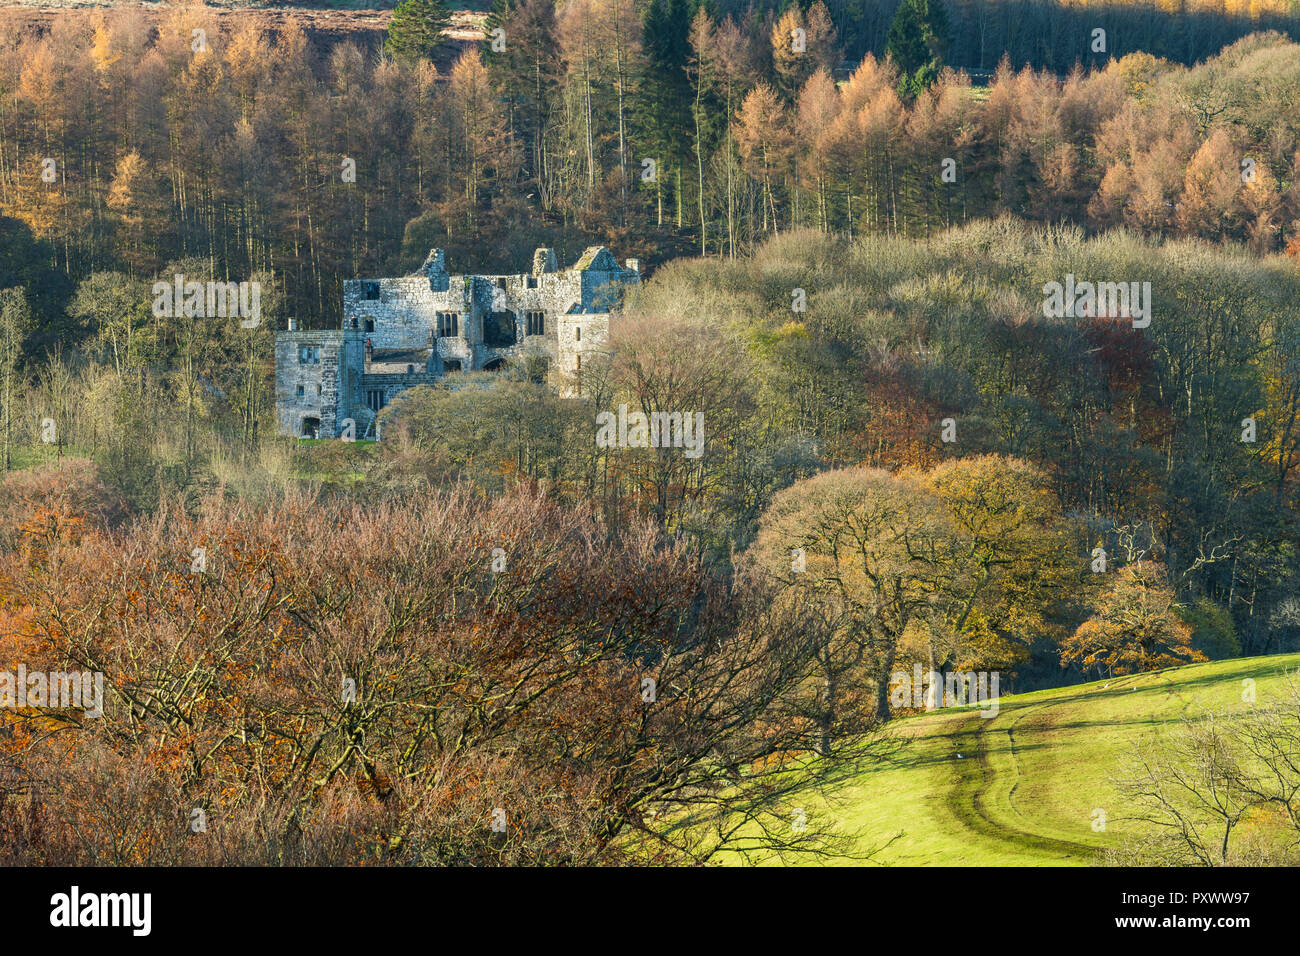 Herbst Blick von Barden Tower, historische Ruinen, die von dichten Wäldern Bäume mit bunten Laub - Bolton Abbey Estate, Yorkshire Dales, England, Großbritannien Stockfoto